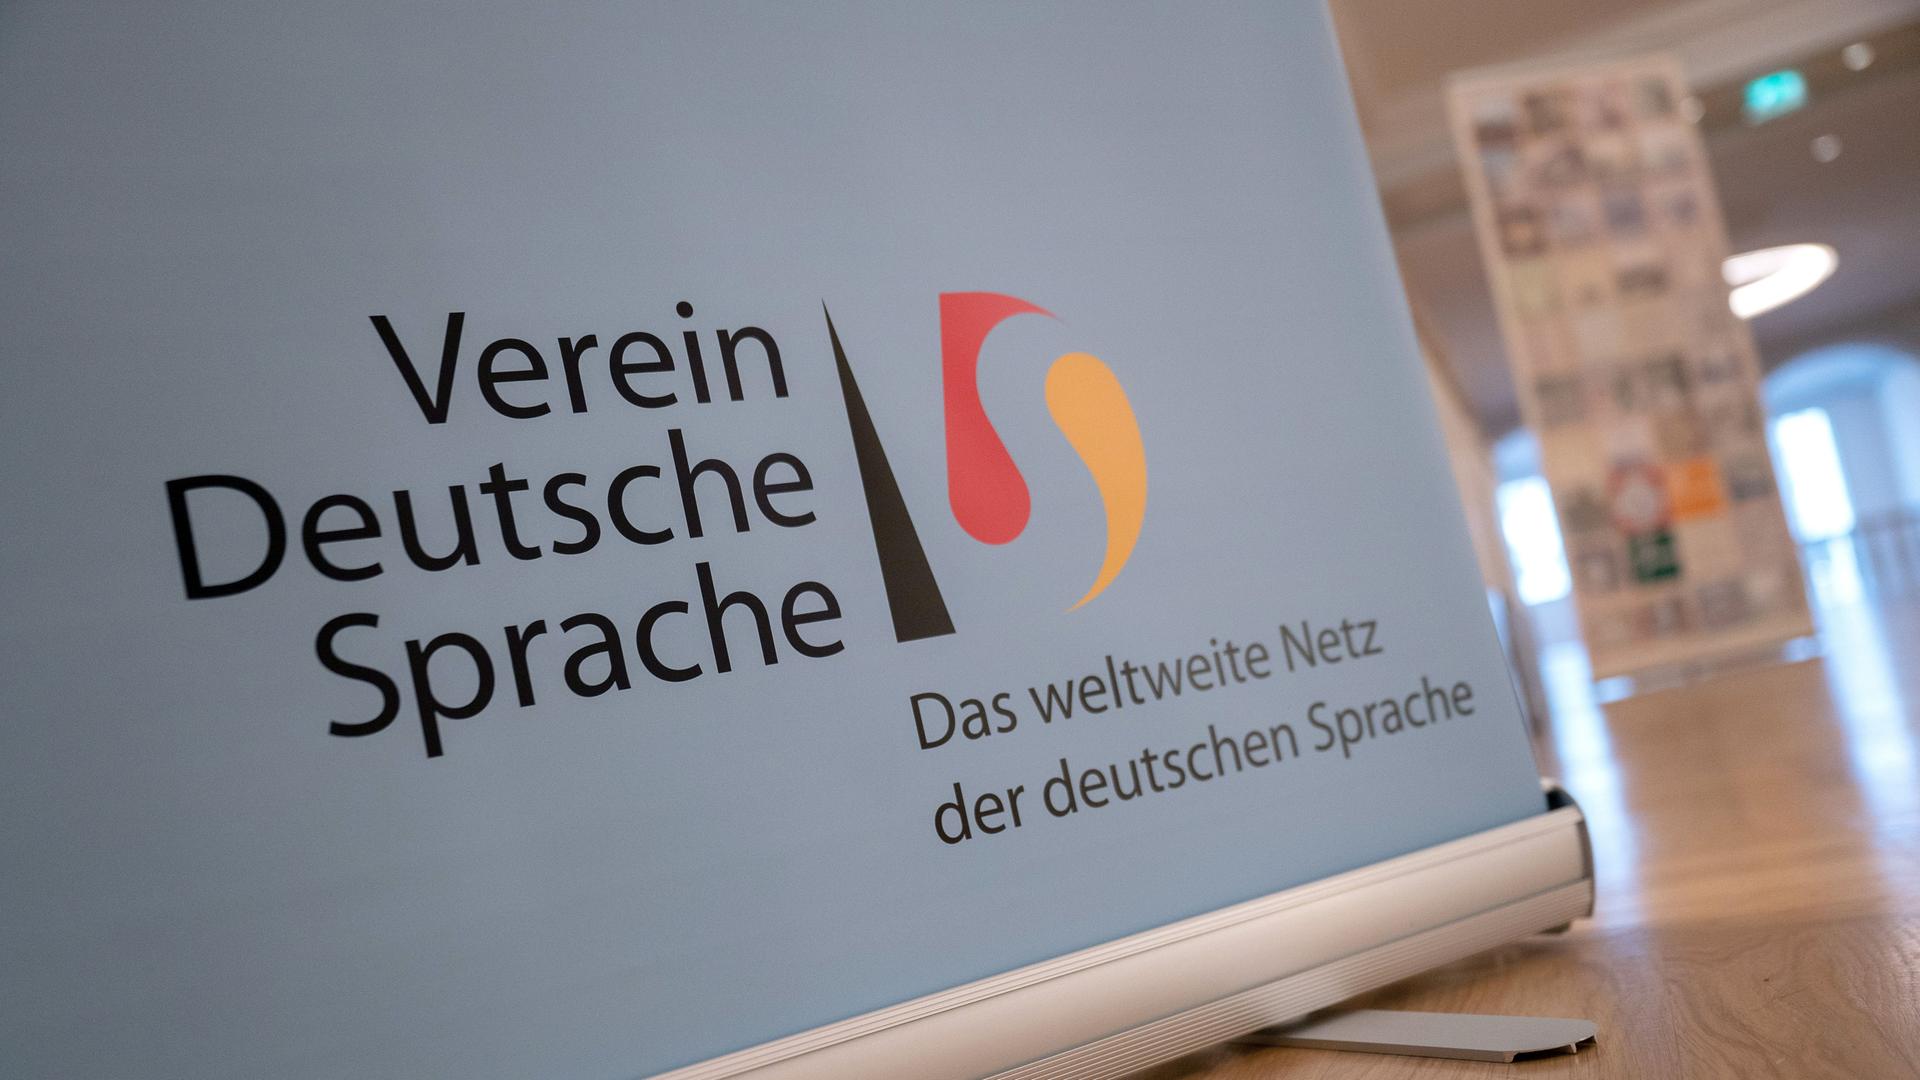 Ein Banner mit der Aufschrift "Verein Deutsche Sprache Das weltweite Netz der deutschen Sprache"